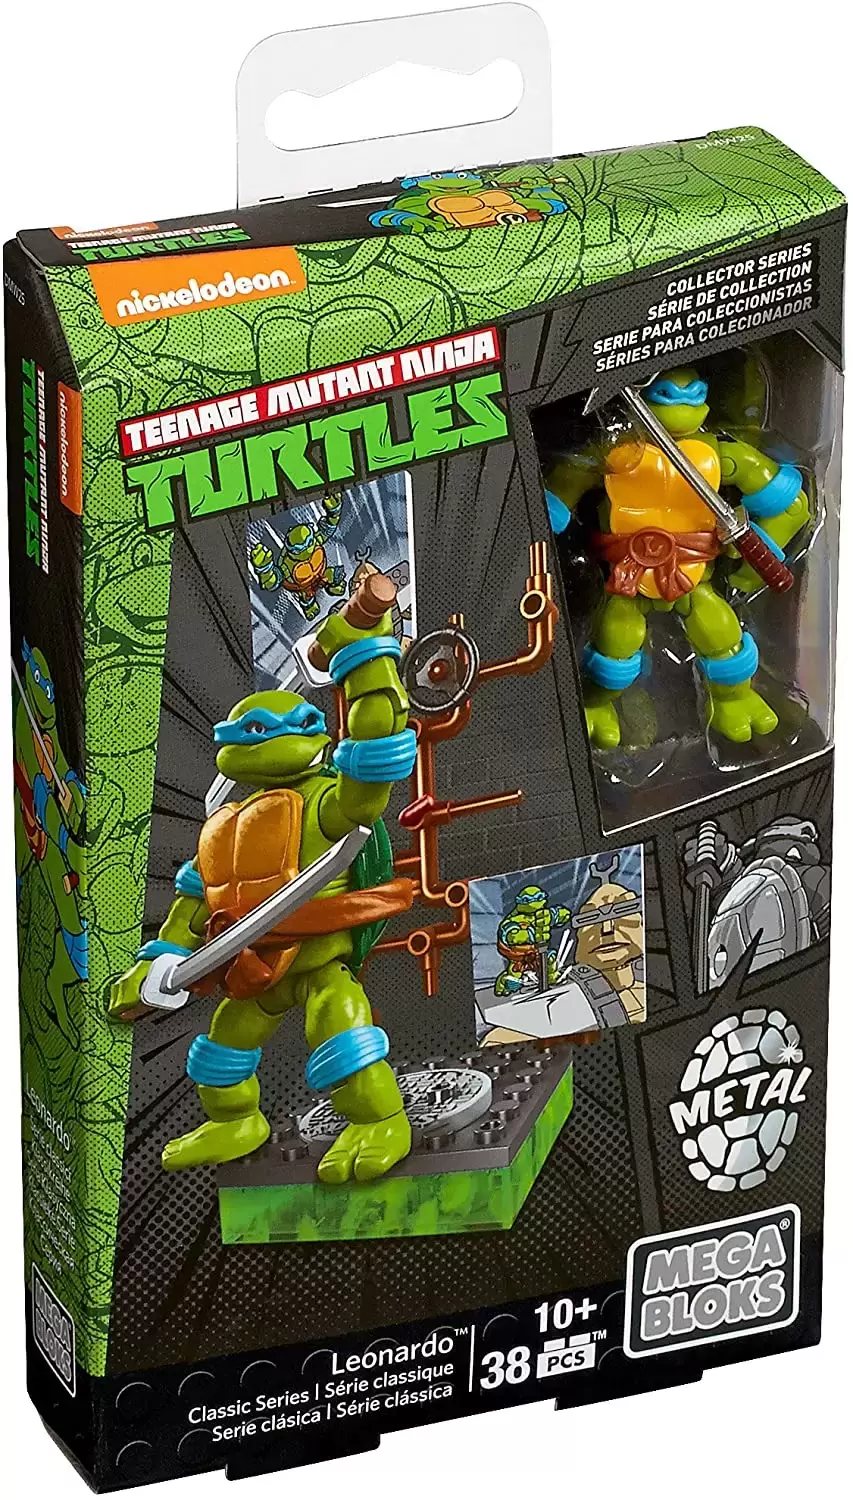 Teenage Mutant Ninja Turtles Mega Bloks - Classic Series Leonardo